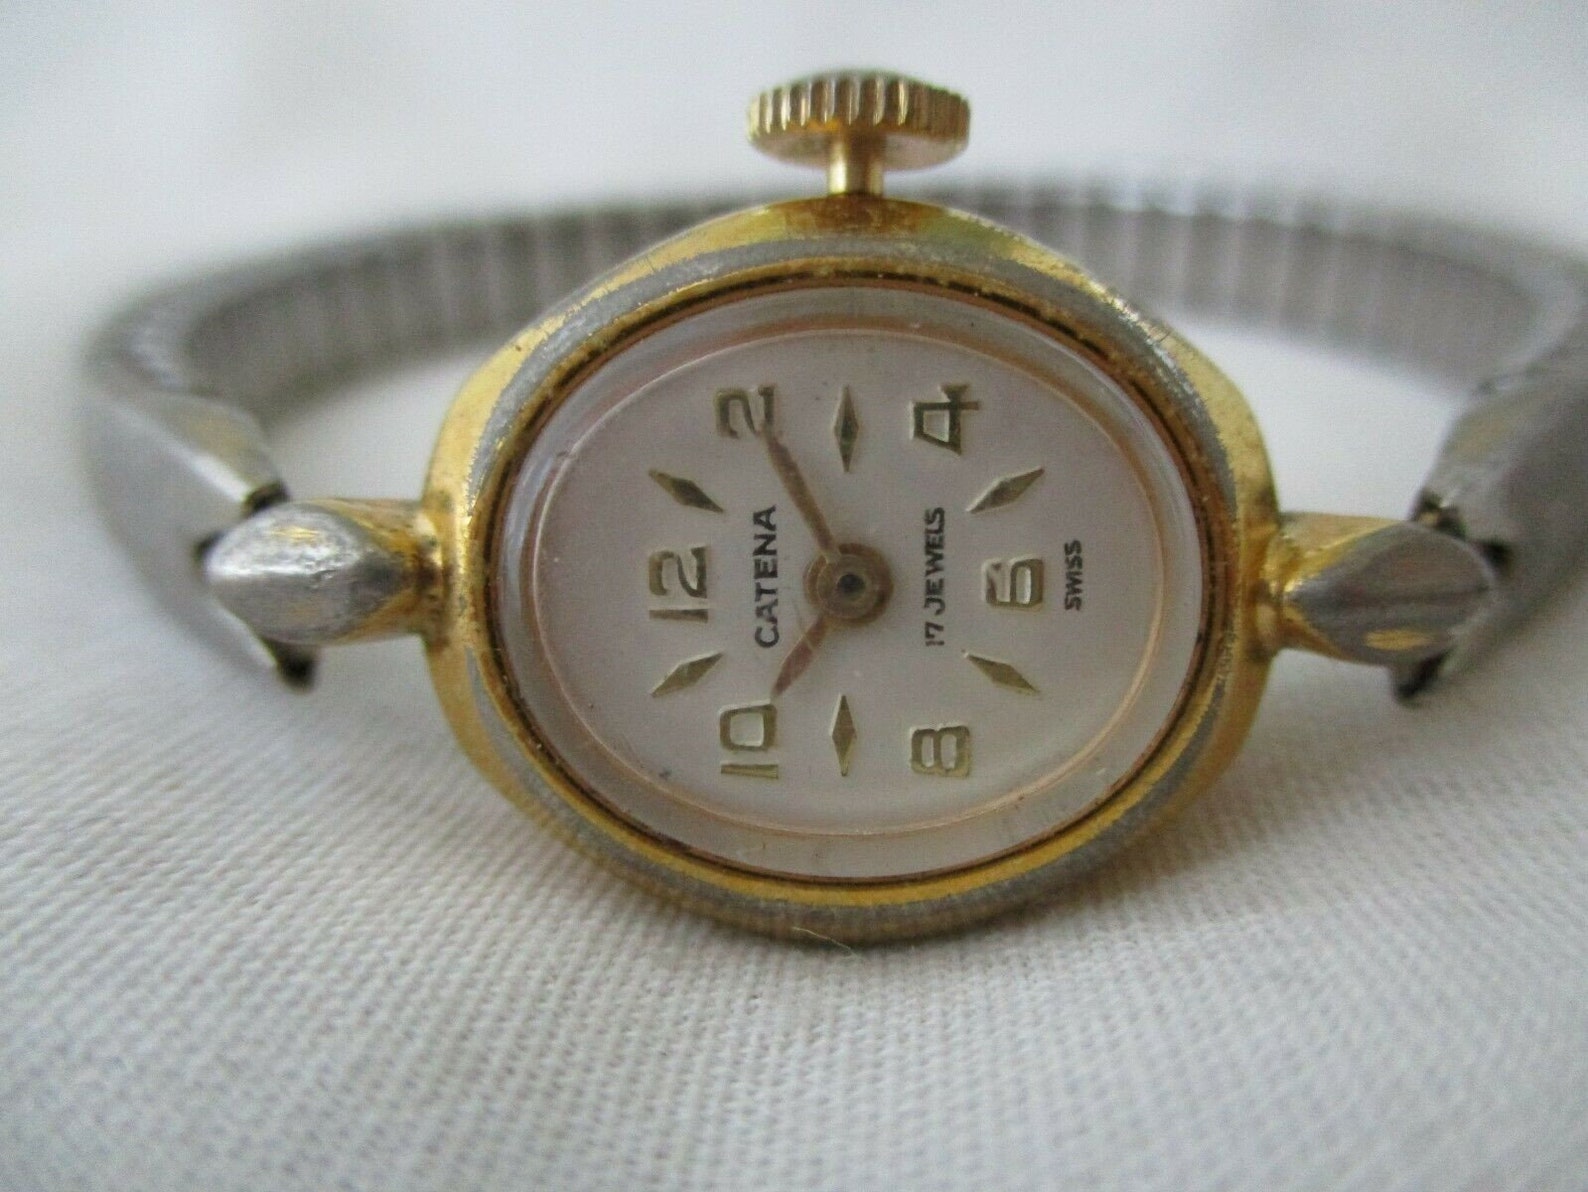 Catena Analog Wristwatch with 17 Jewels | Etsy